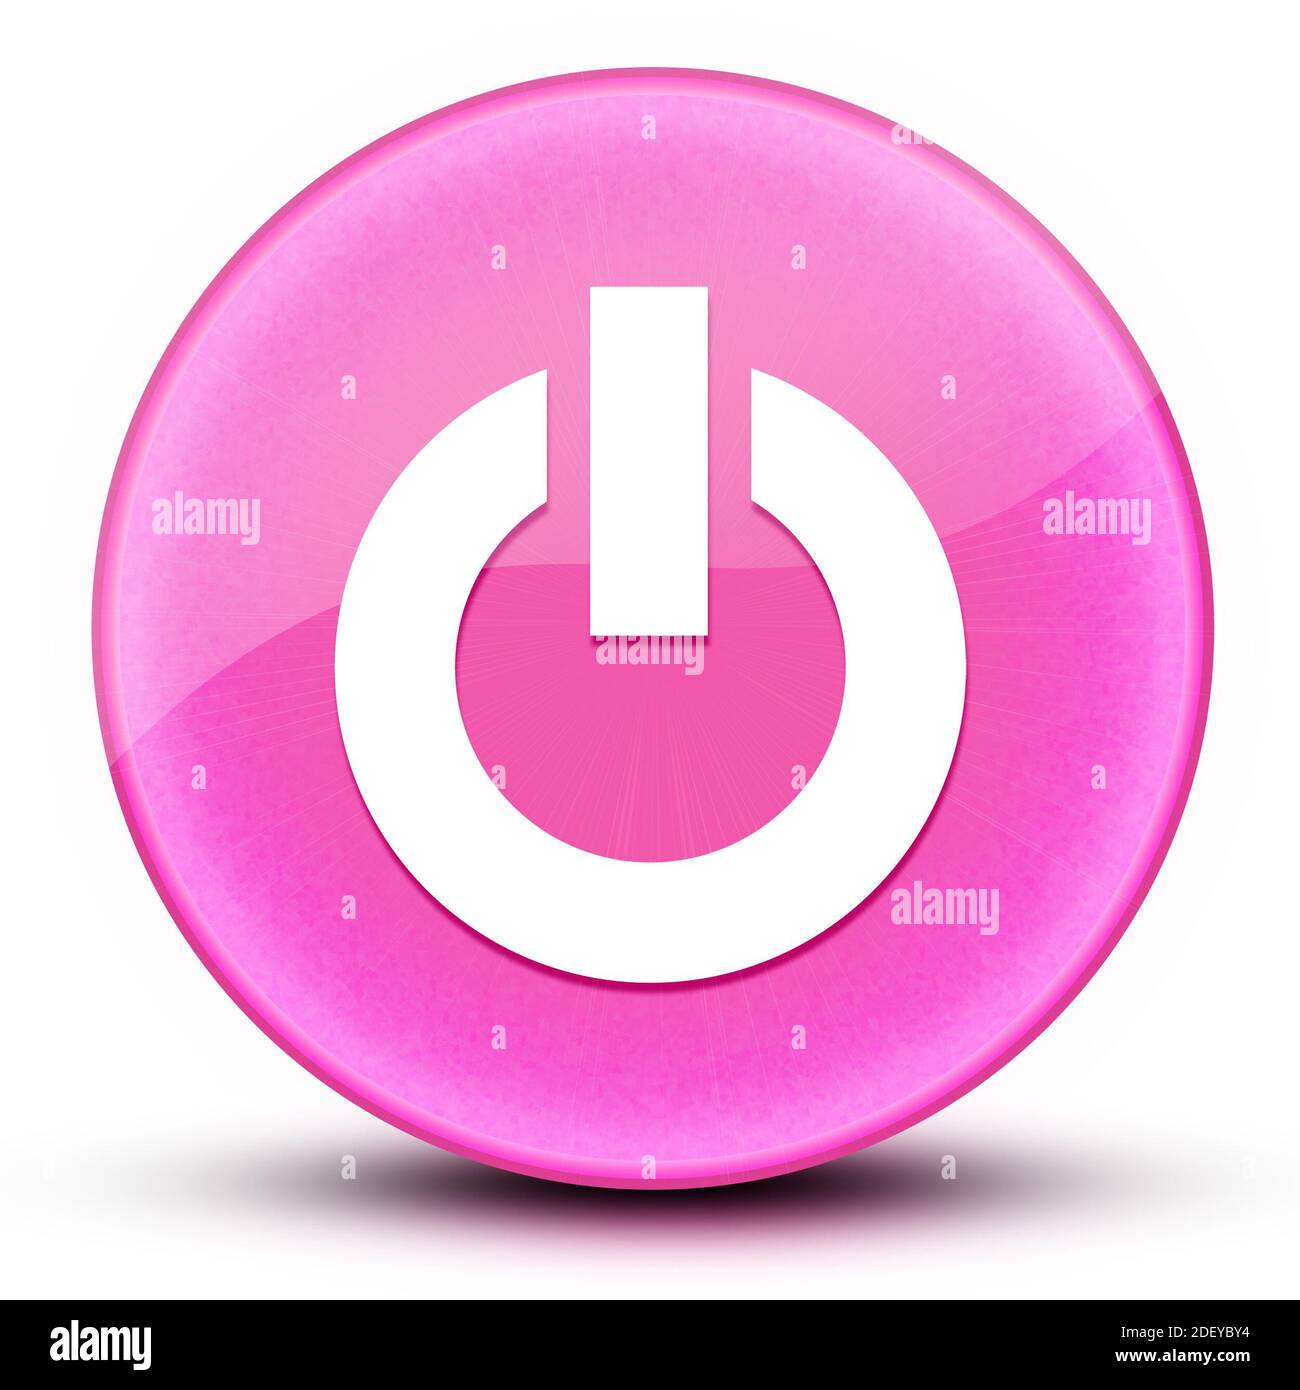 Motor-Start-Augapfel glänzend elegante rosa runden Knopf abstrakte Abbildung Stockfoto